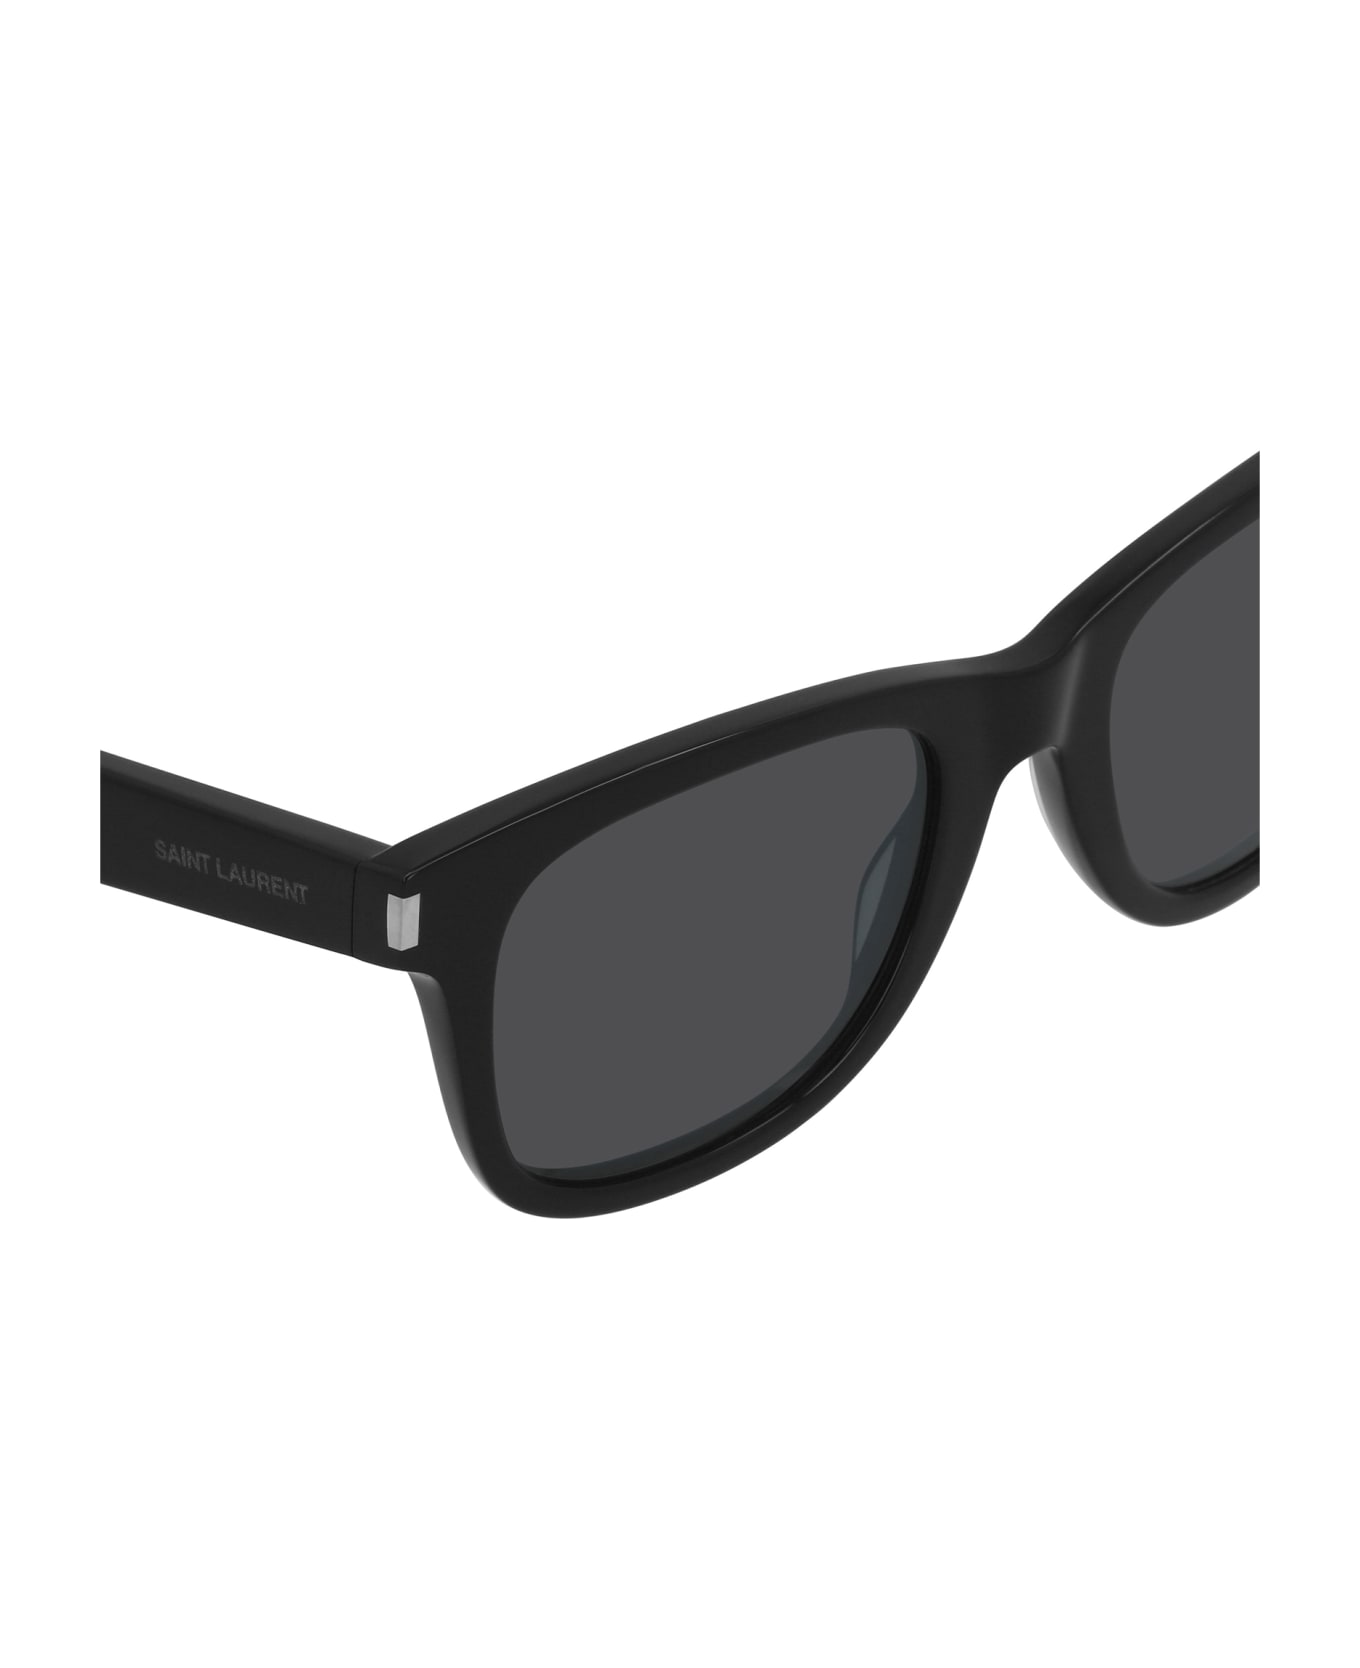 Saint Laurent Eyewear Sl 51 Black Sunglasses - Black